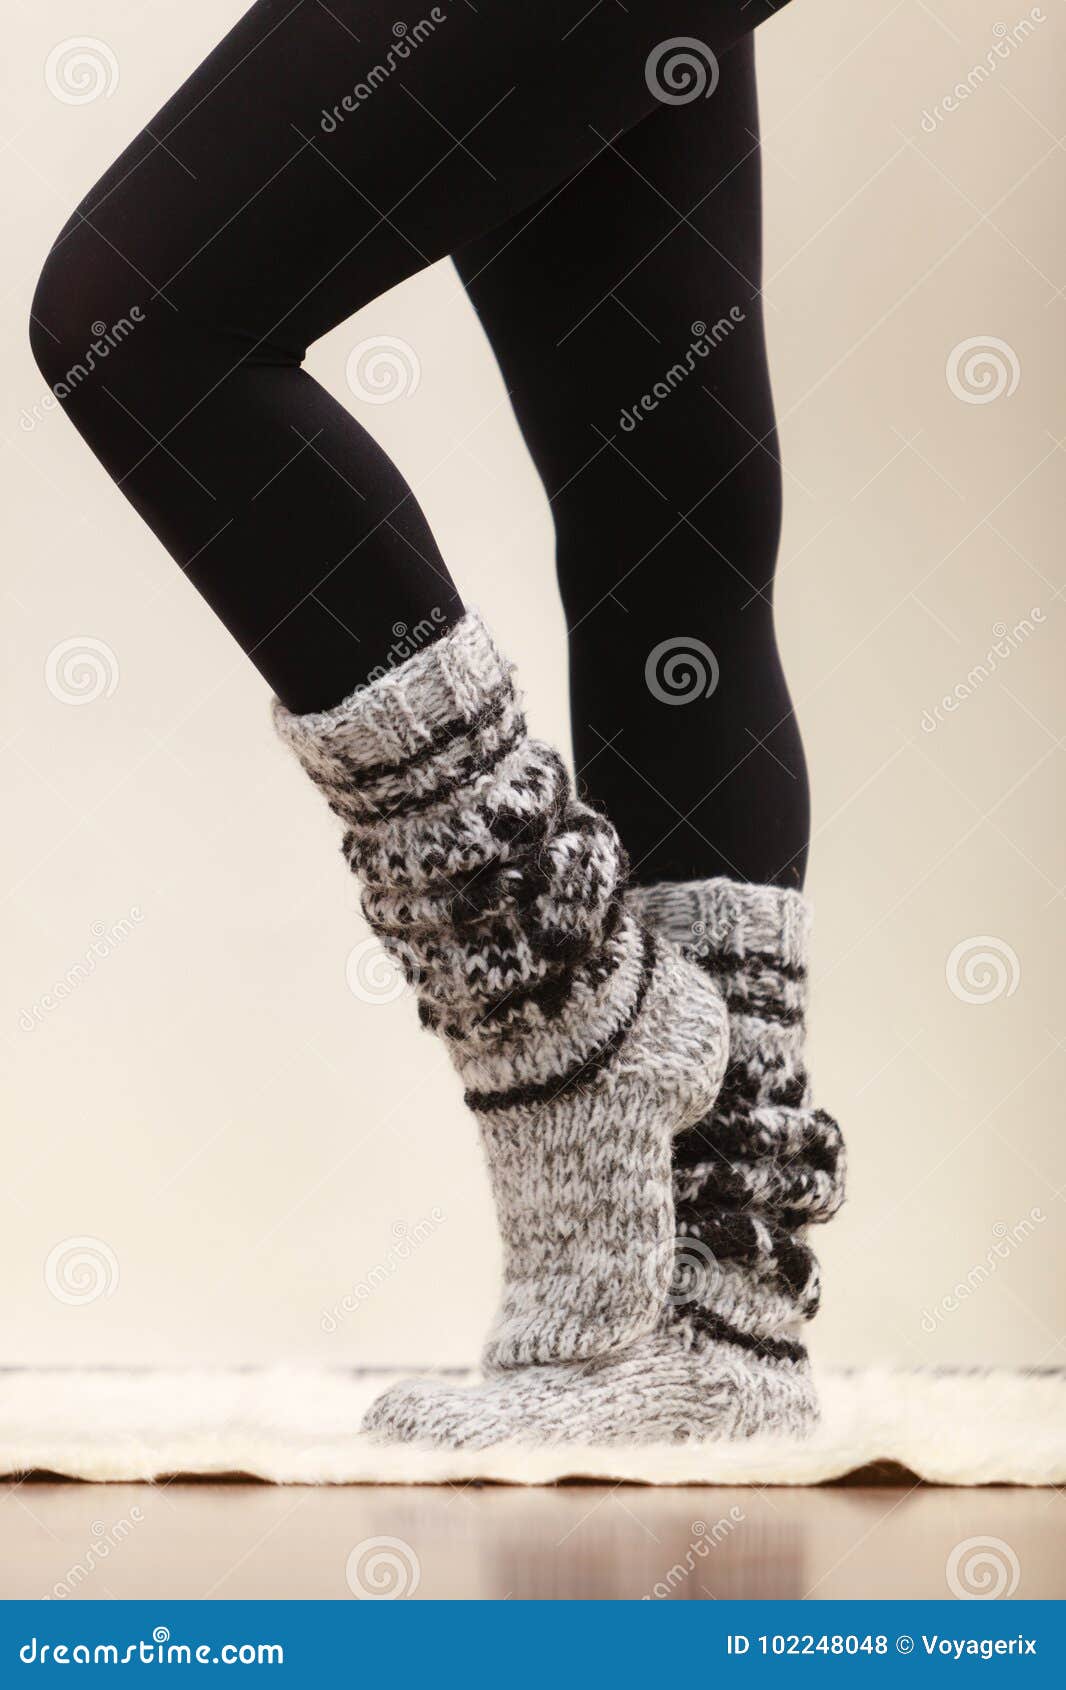 Buy Shri Hub Women's Stretch Fit Wool Leggings (Woolen-L-Beige_Beige_Free  Size) at Amazon.in